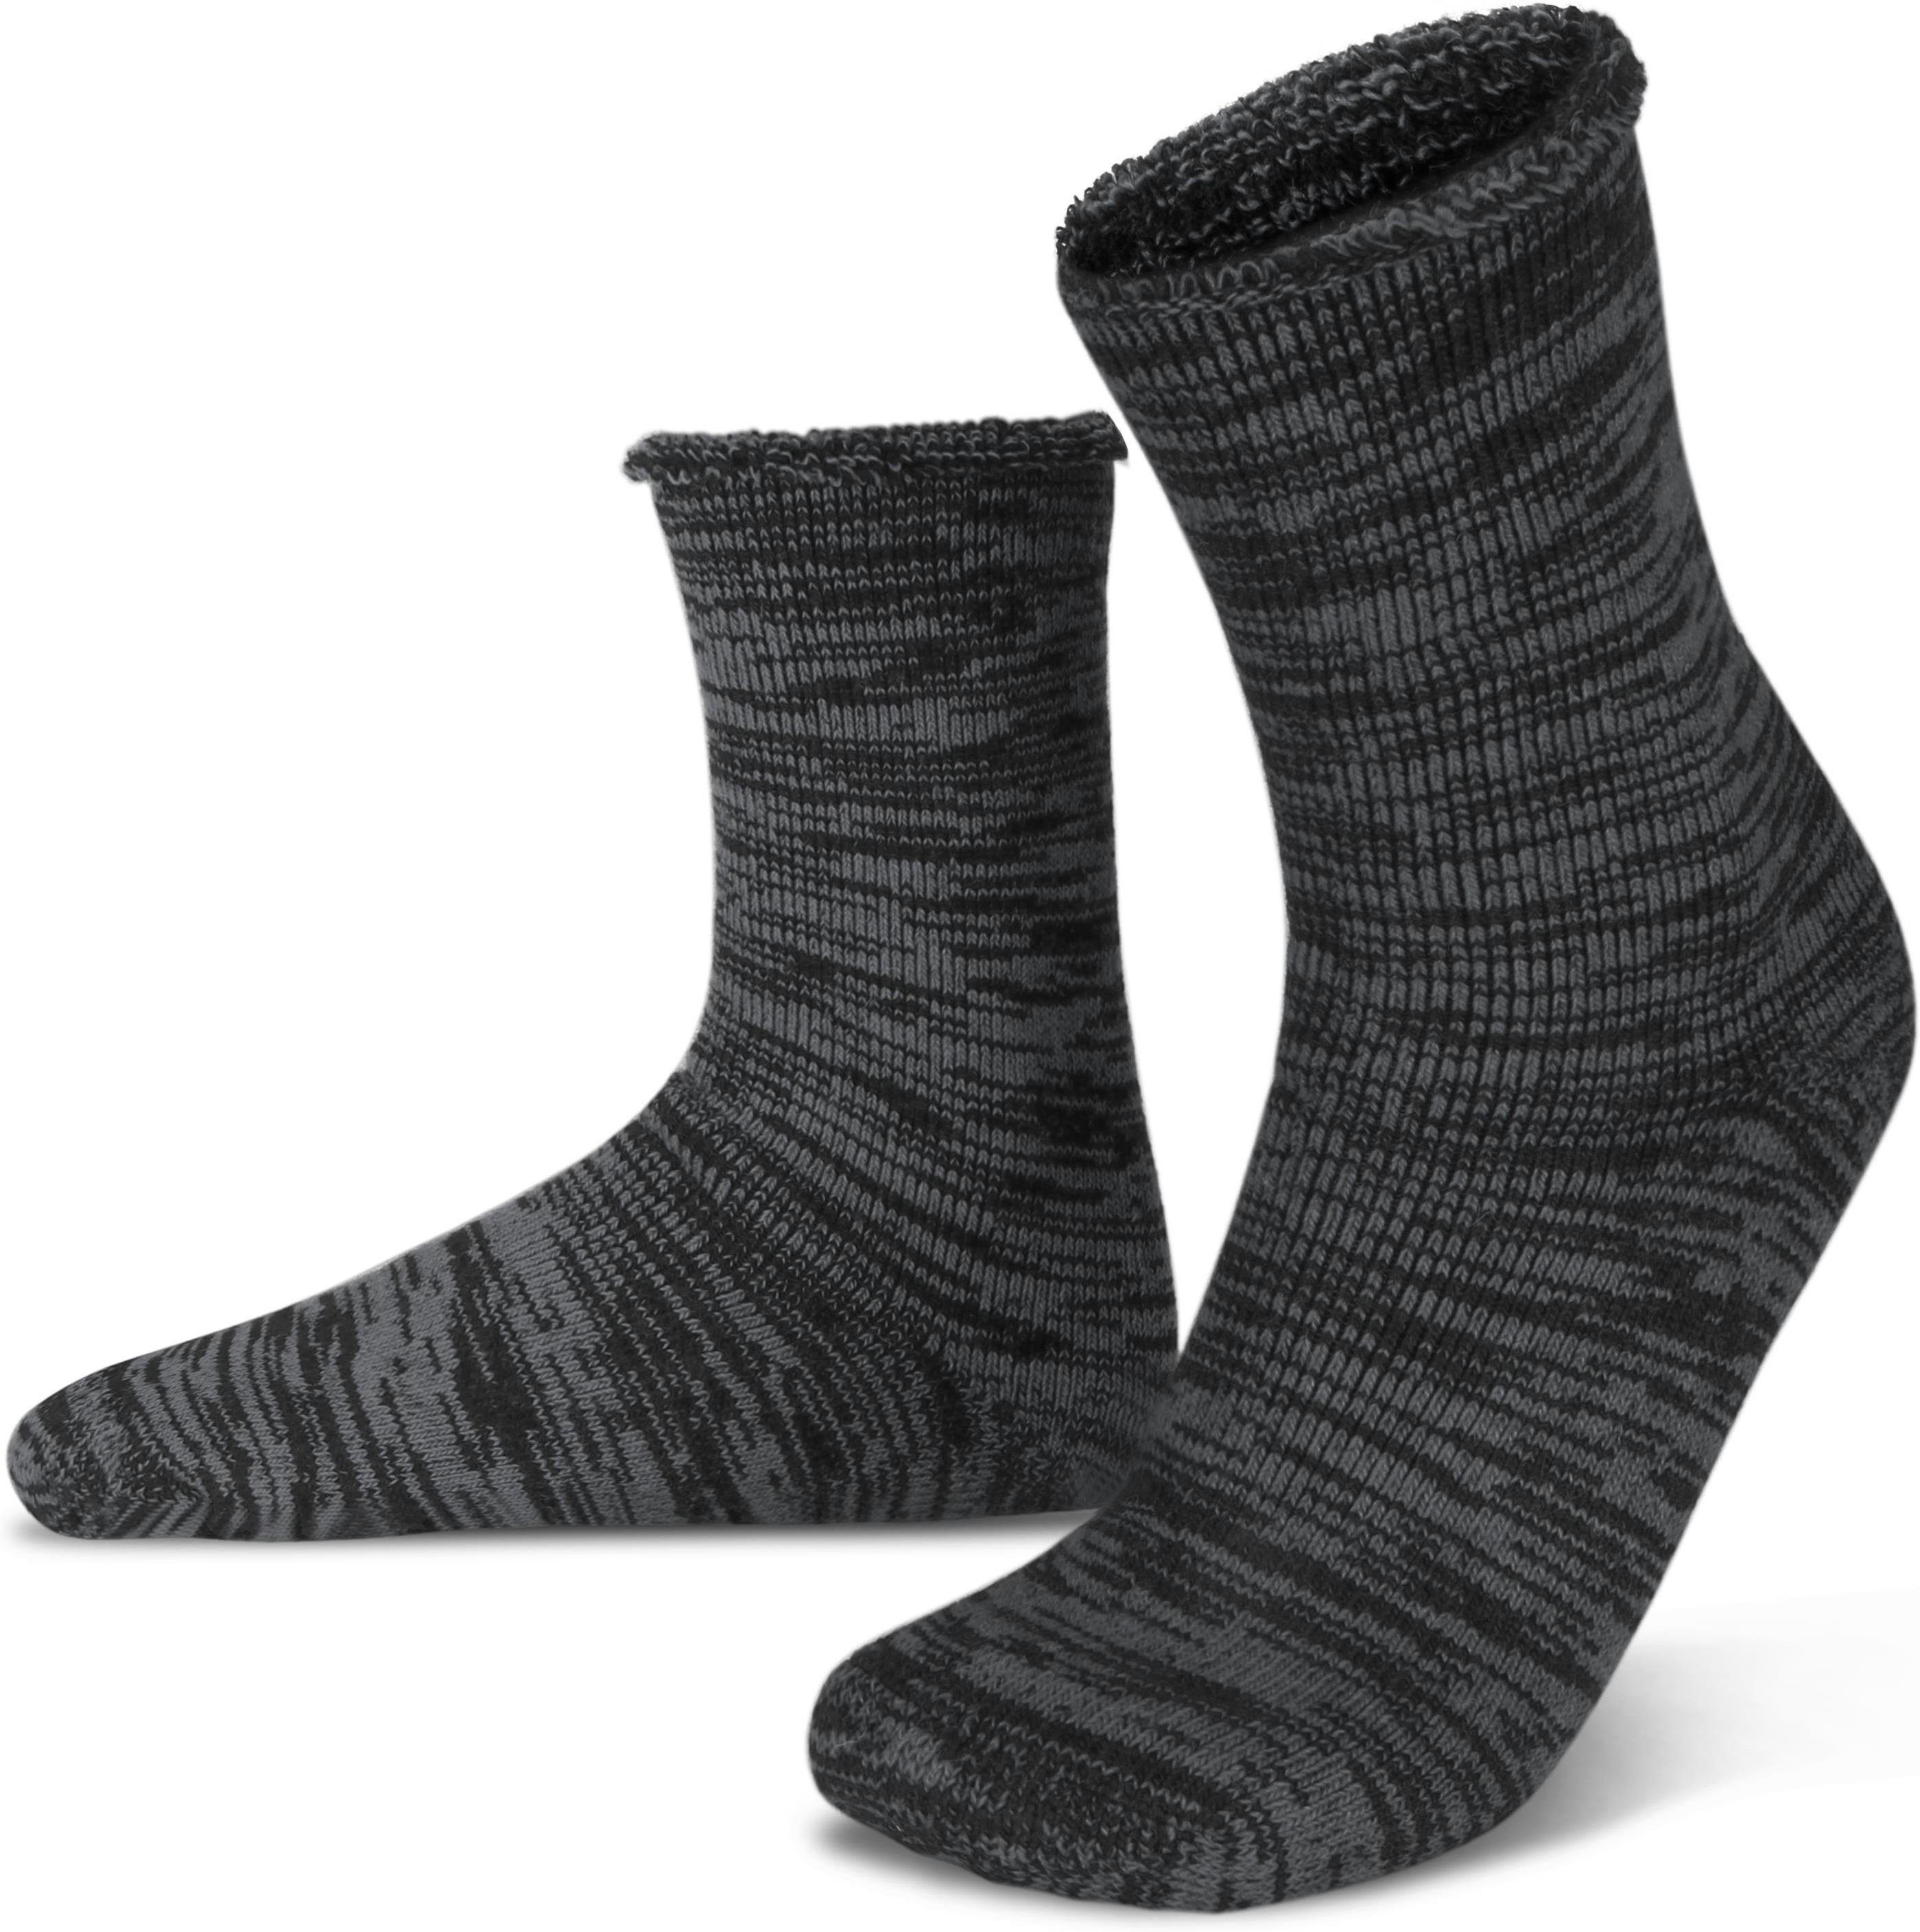 Polar Husky Thermosocken Farbige Vollplüsch-Socken mit Wolle durchgehend gefüttert Grau/Schwarz | Thermosocken